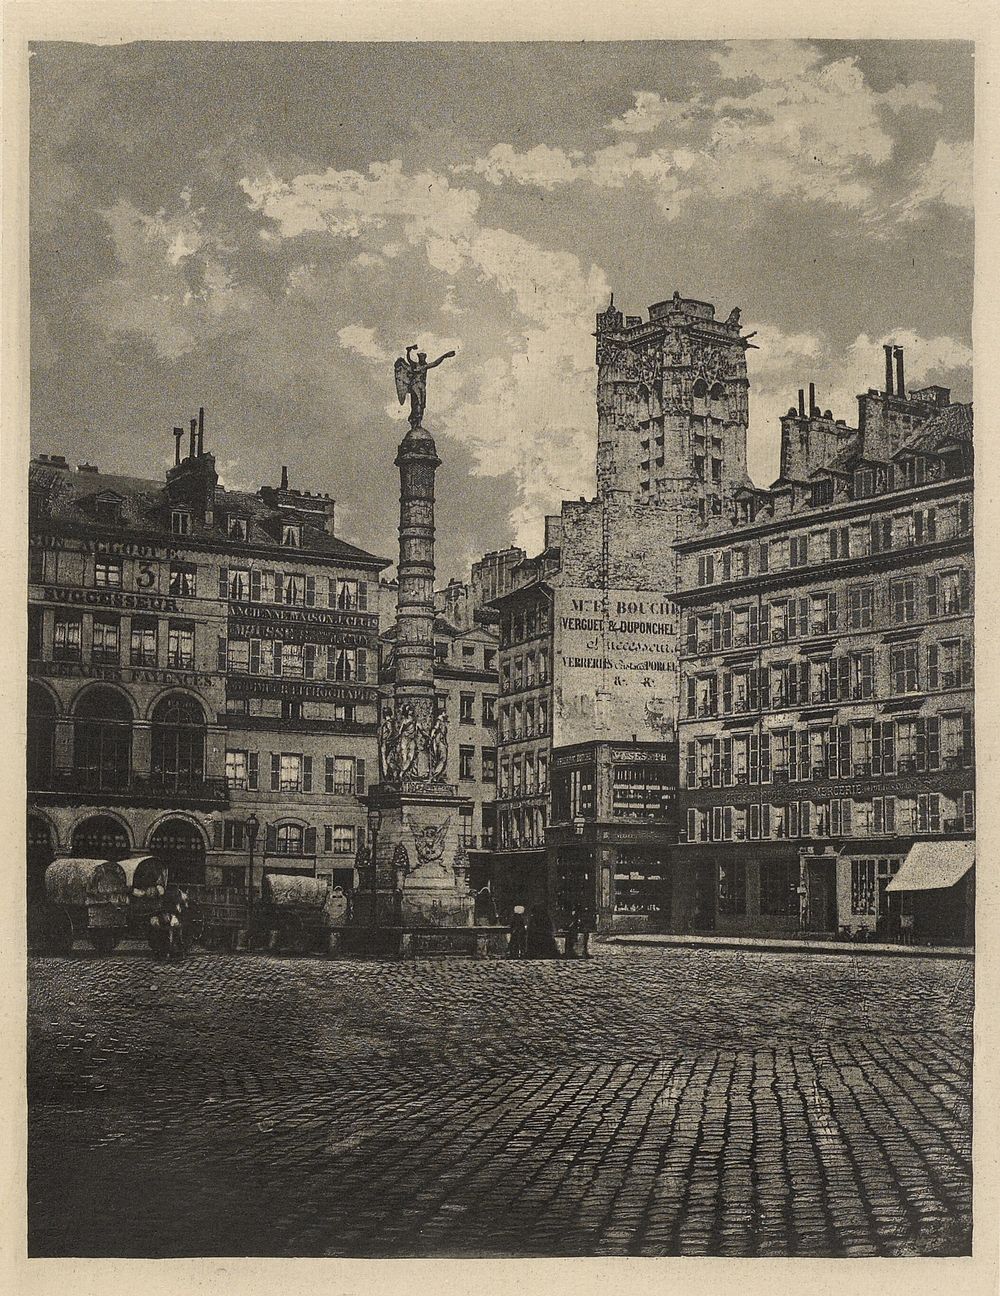 Place du Châtelet, Paris by Charles Nègre